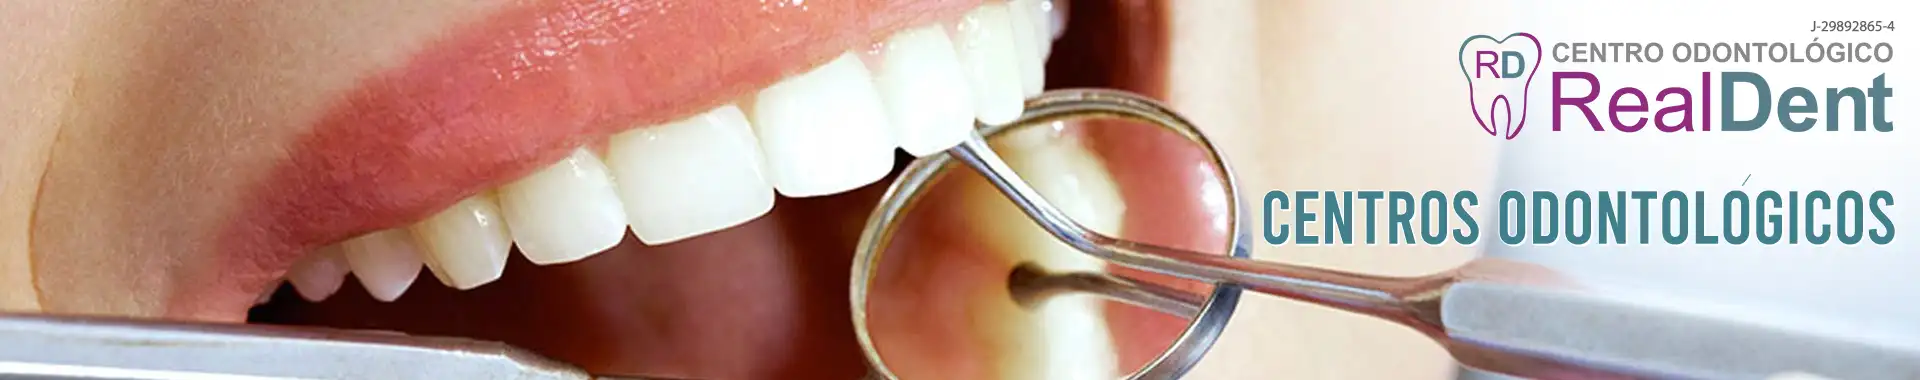 Imagen 1 del perfil de Real - dent